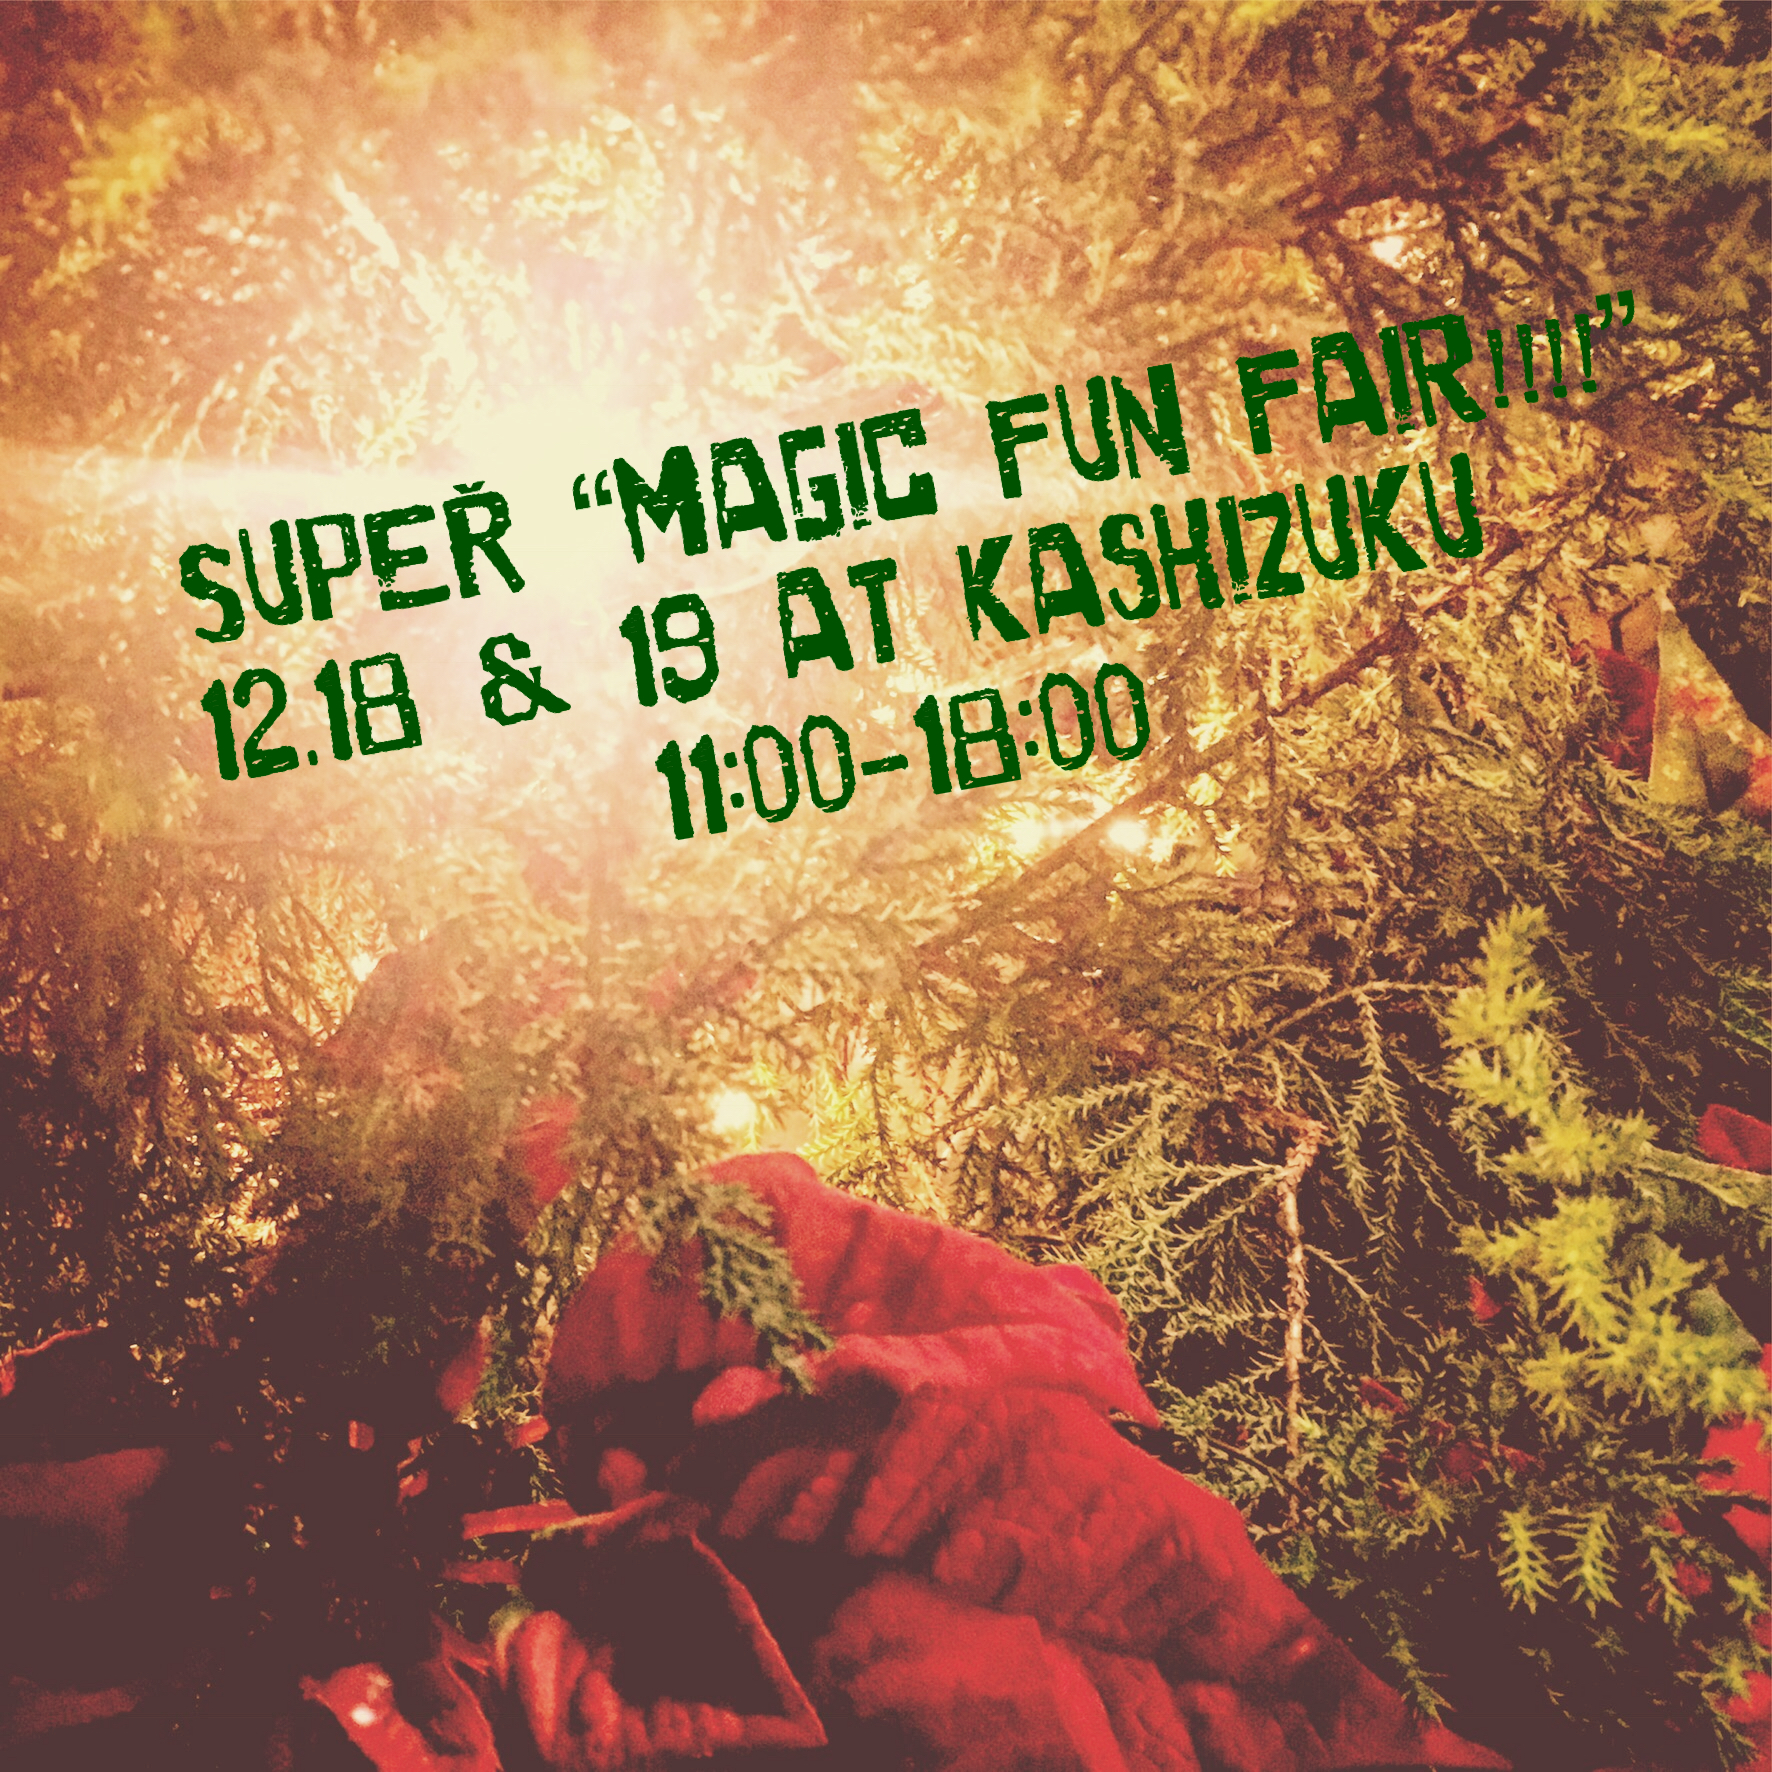 SUPER 'magic fun fair!!!!" VOL.8